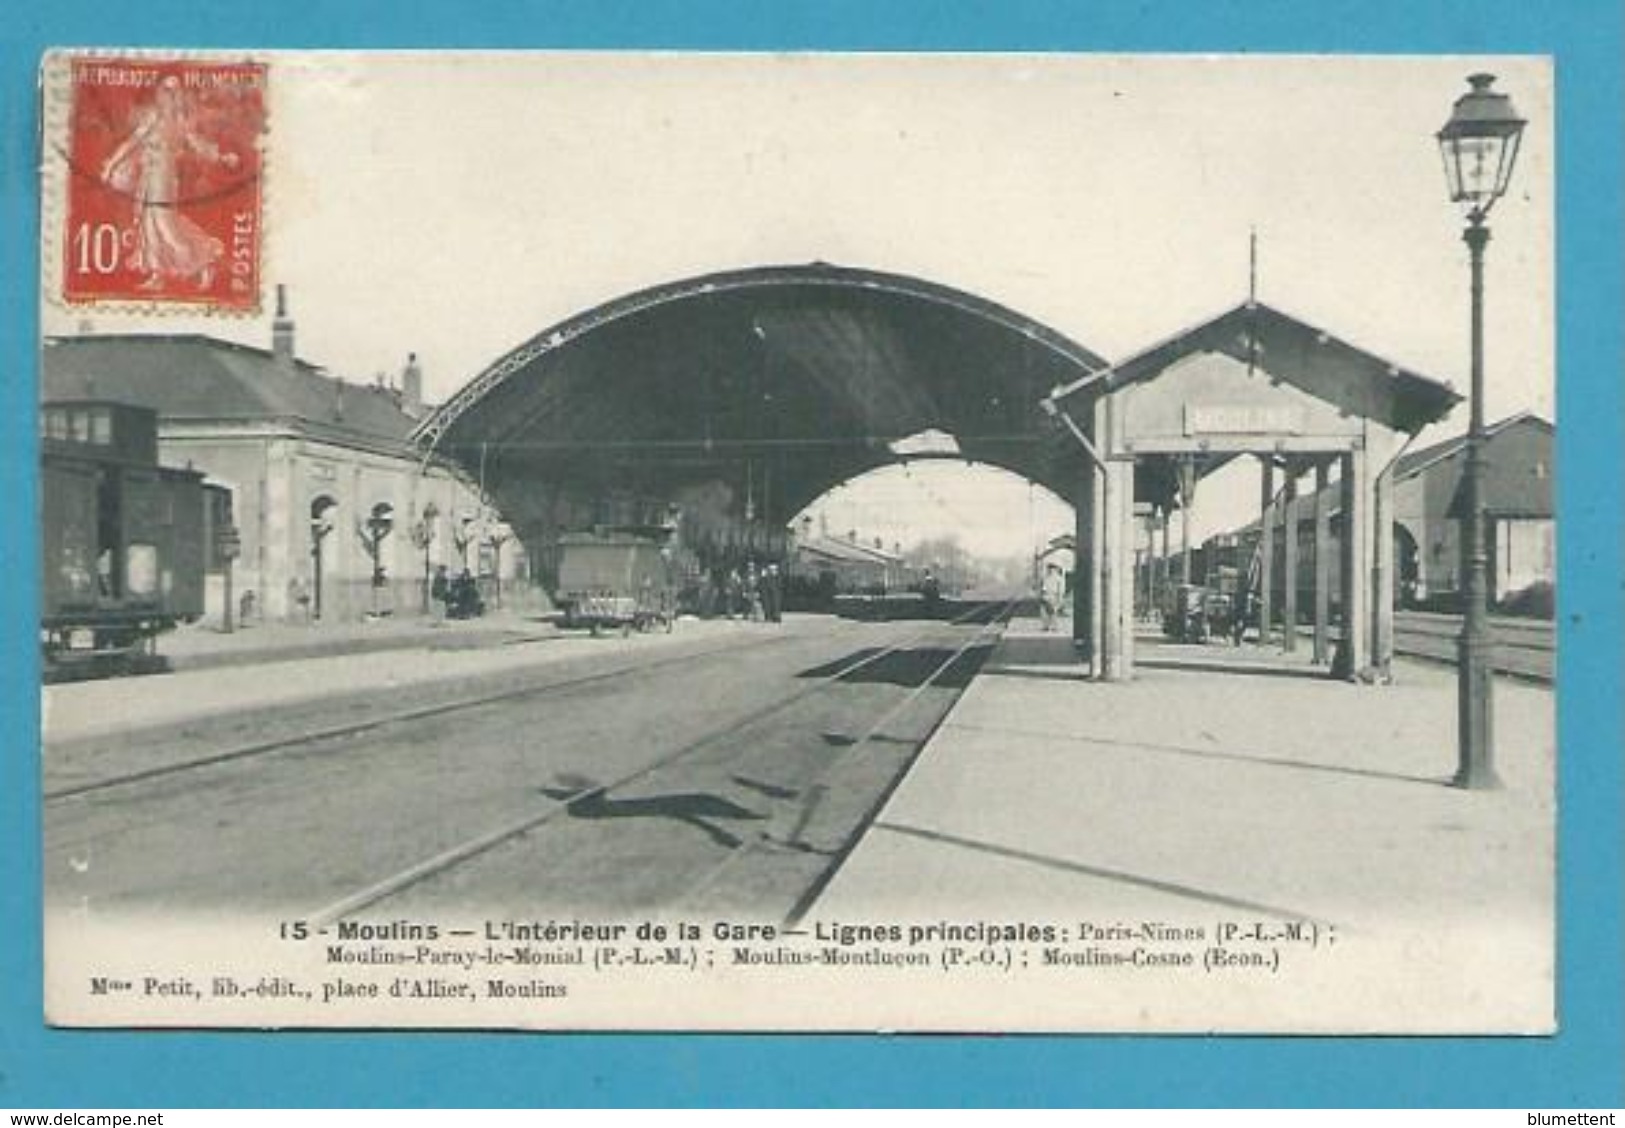 CPA 15 - Chemin De Fer L'intérieur De La Gare MOULINS 03 - Moulins